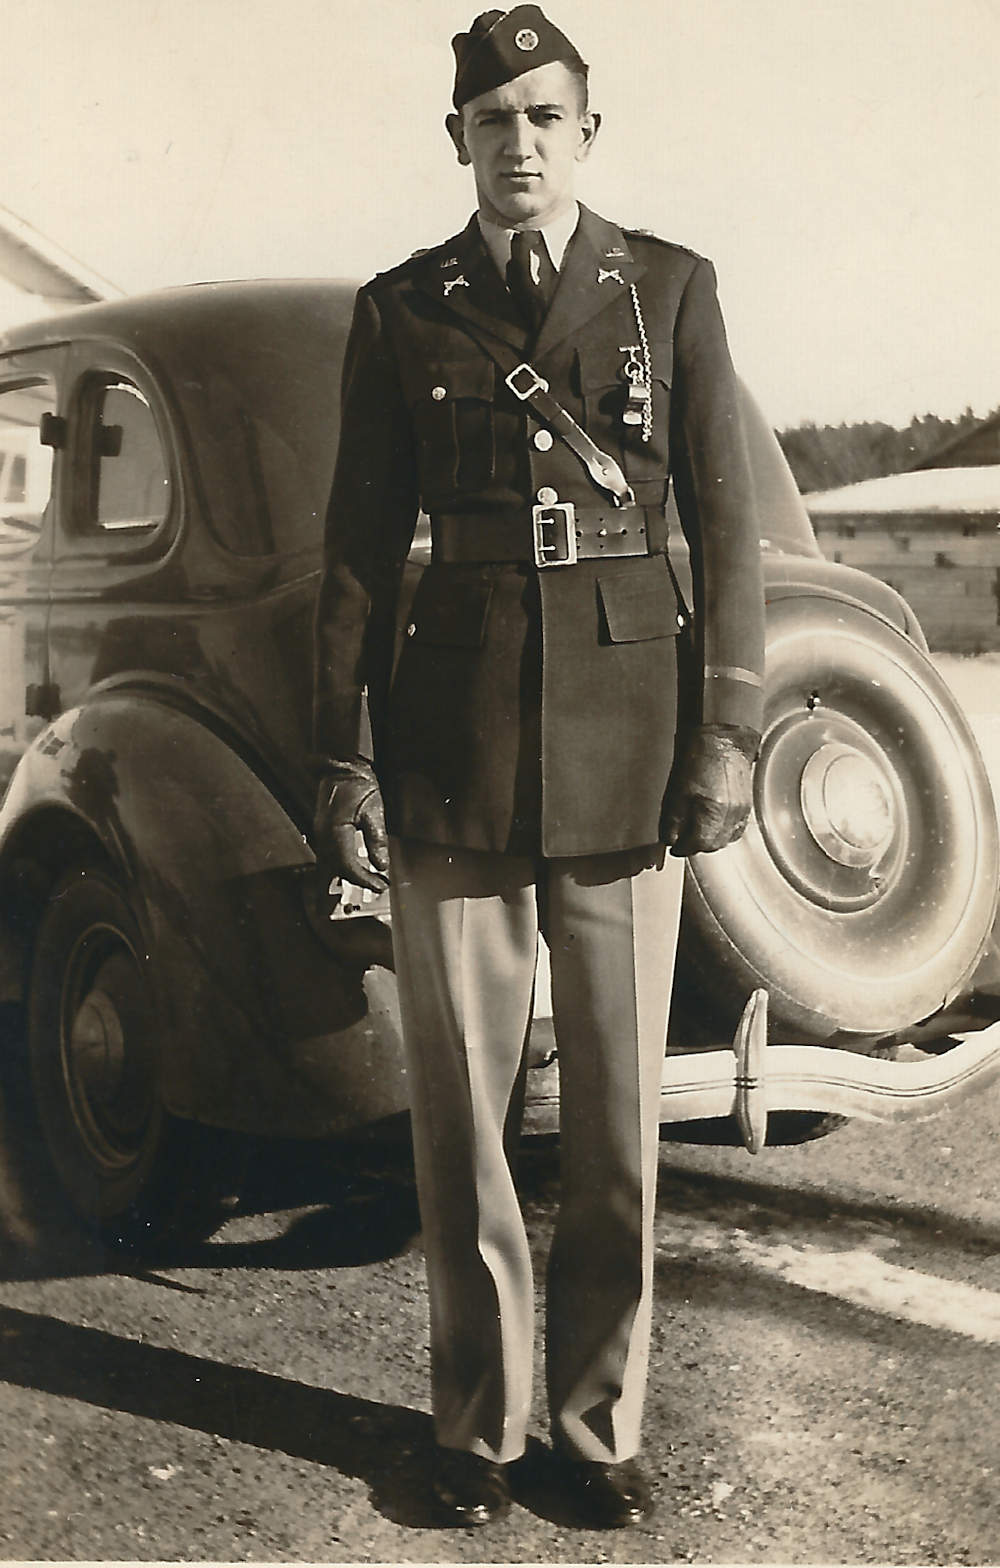 Capt. Robert Copp